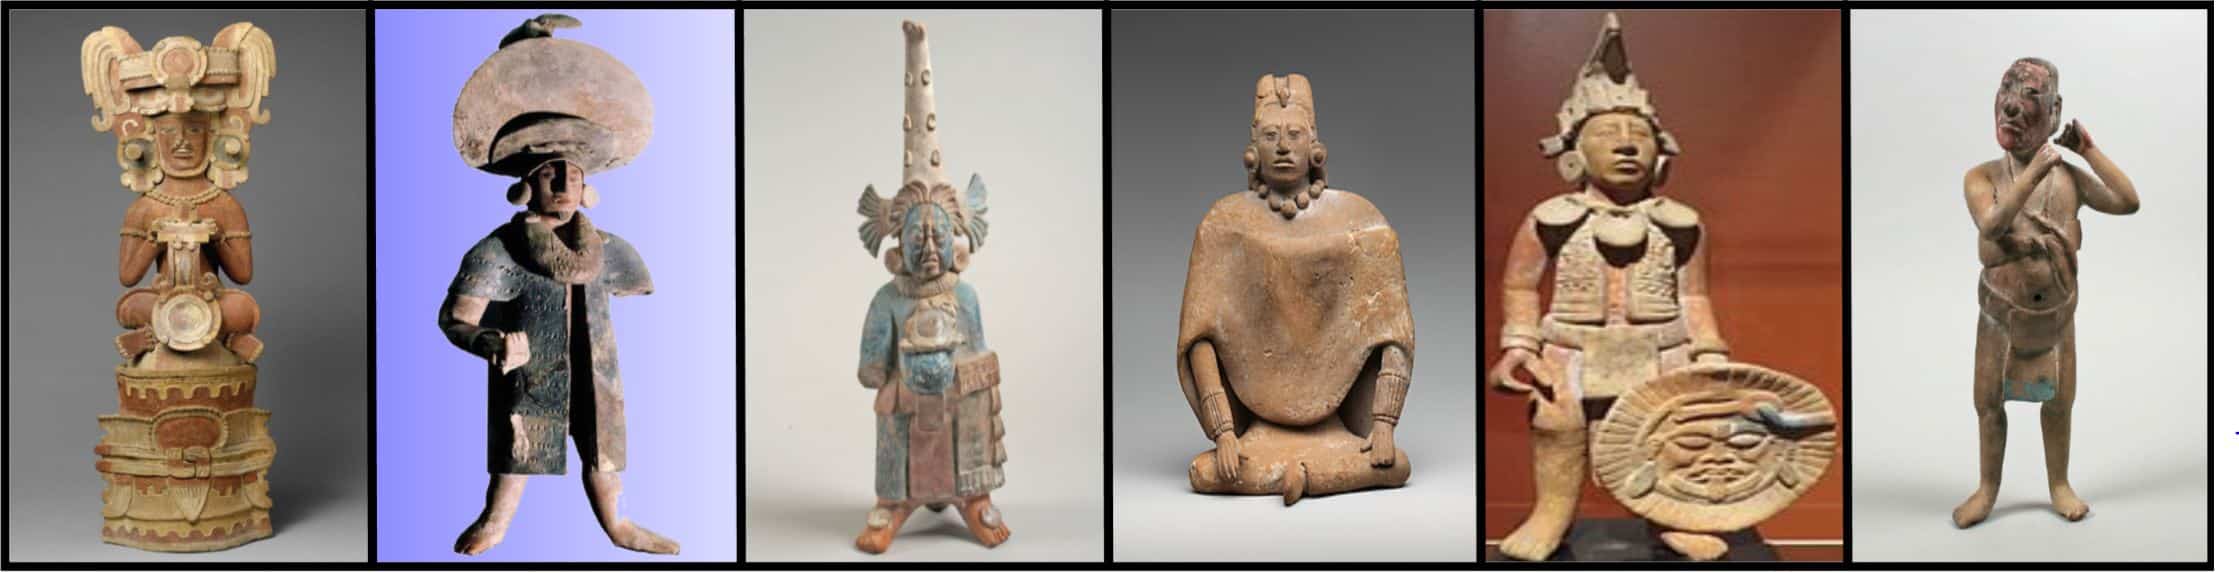 Maya clay figures